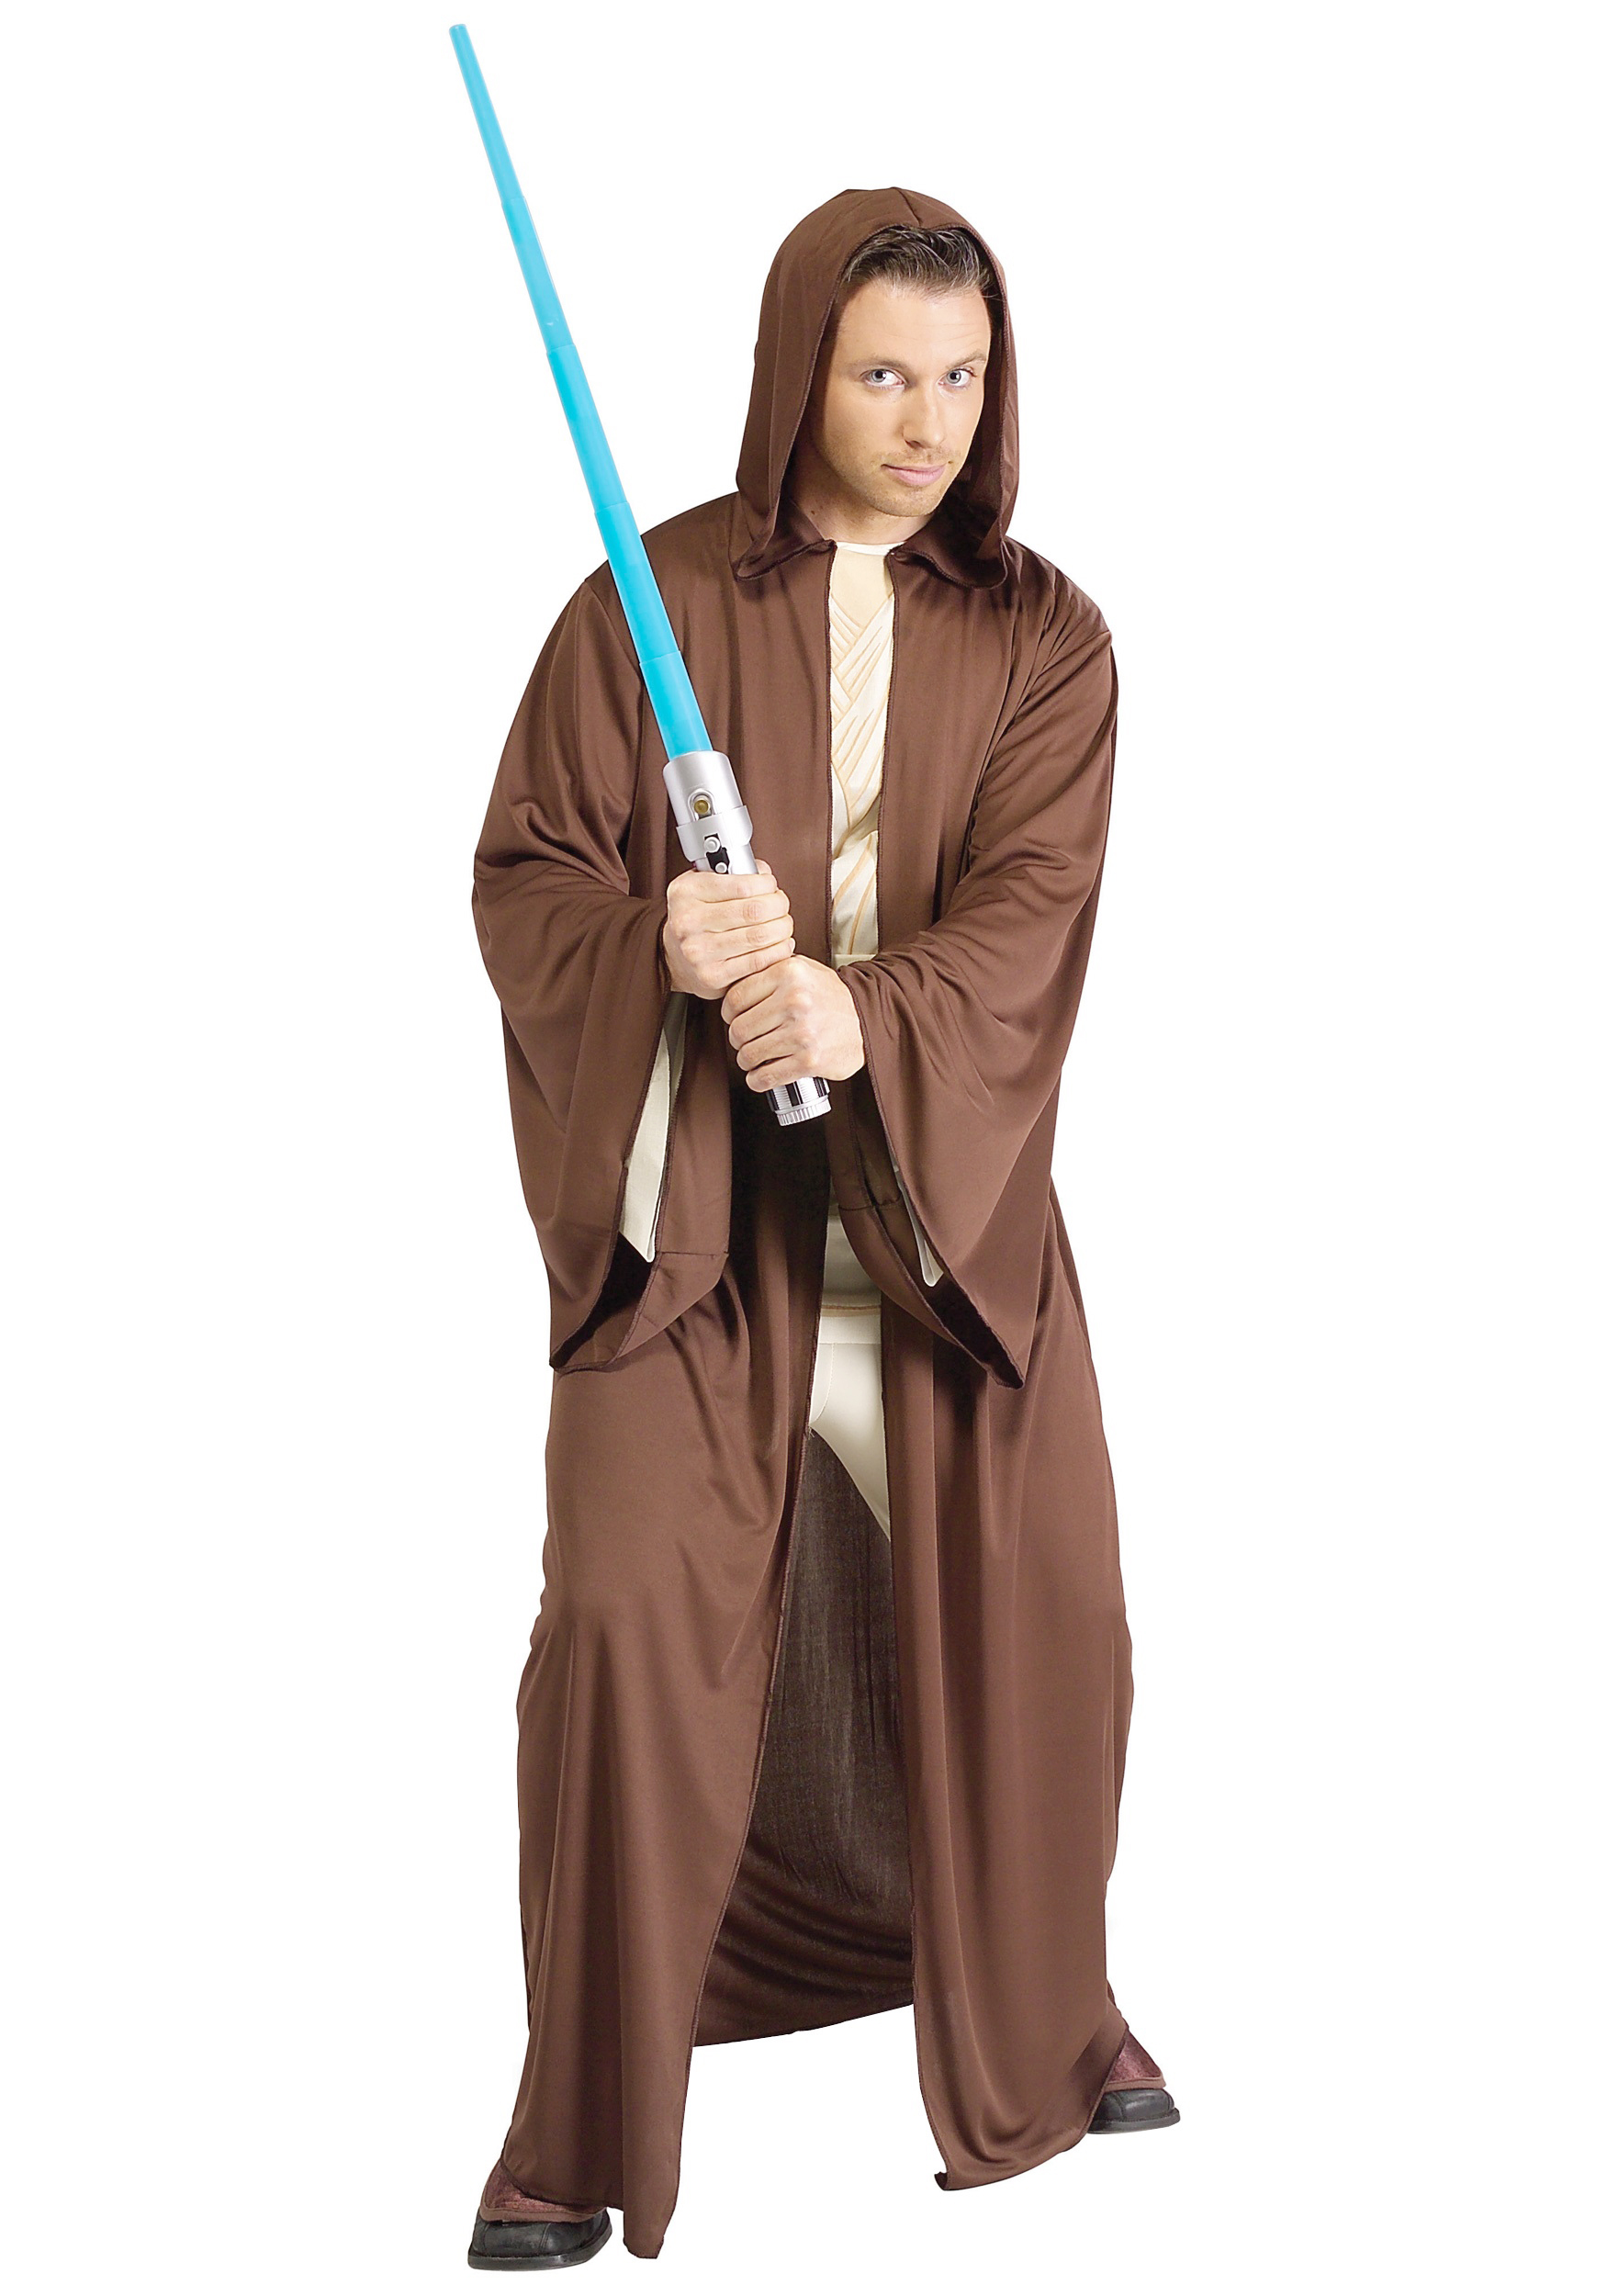 Of anders ritme interview Star Wars Jedi kostuum kopen? Nu €24,95! - FeestinjeBeest.nl